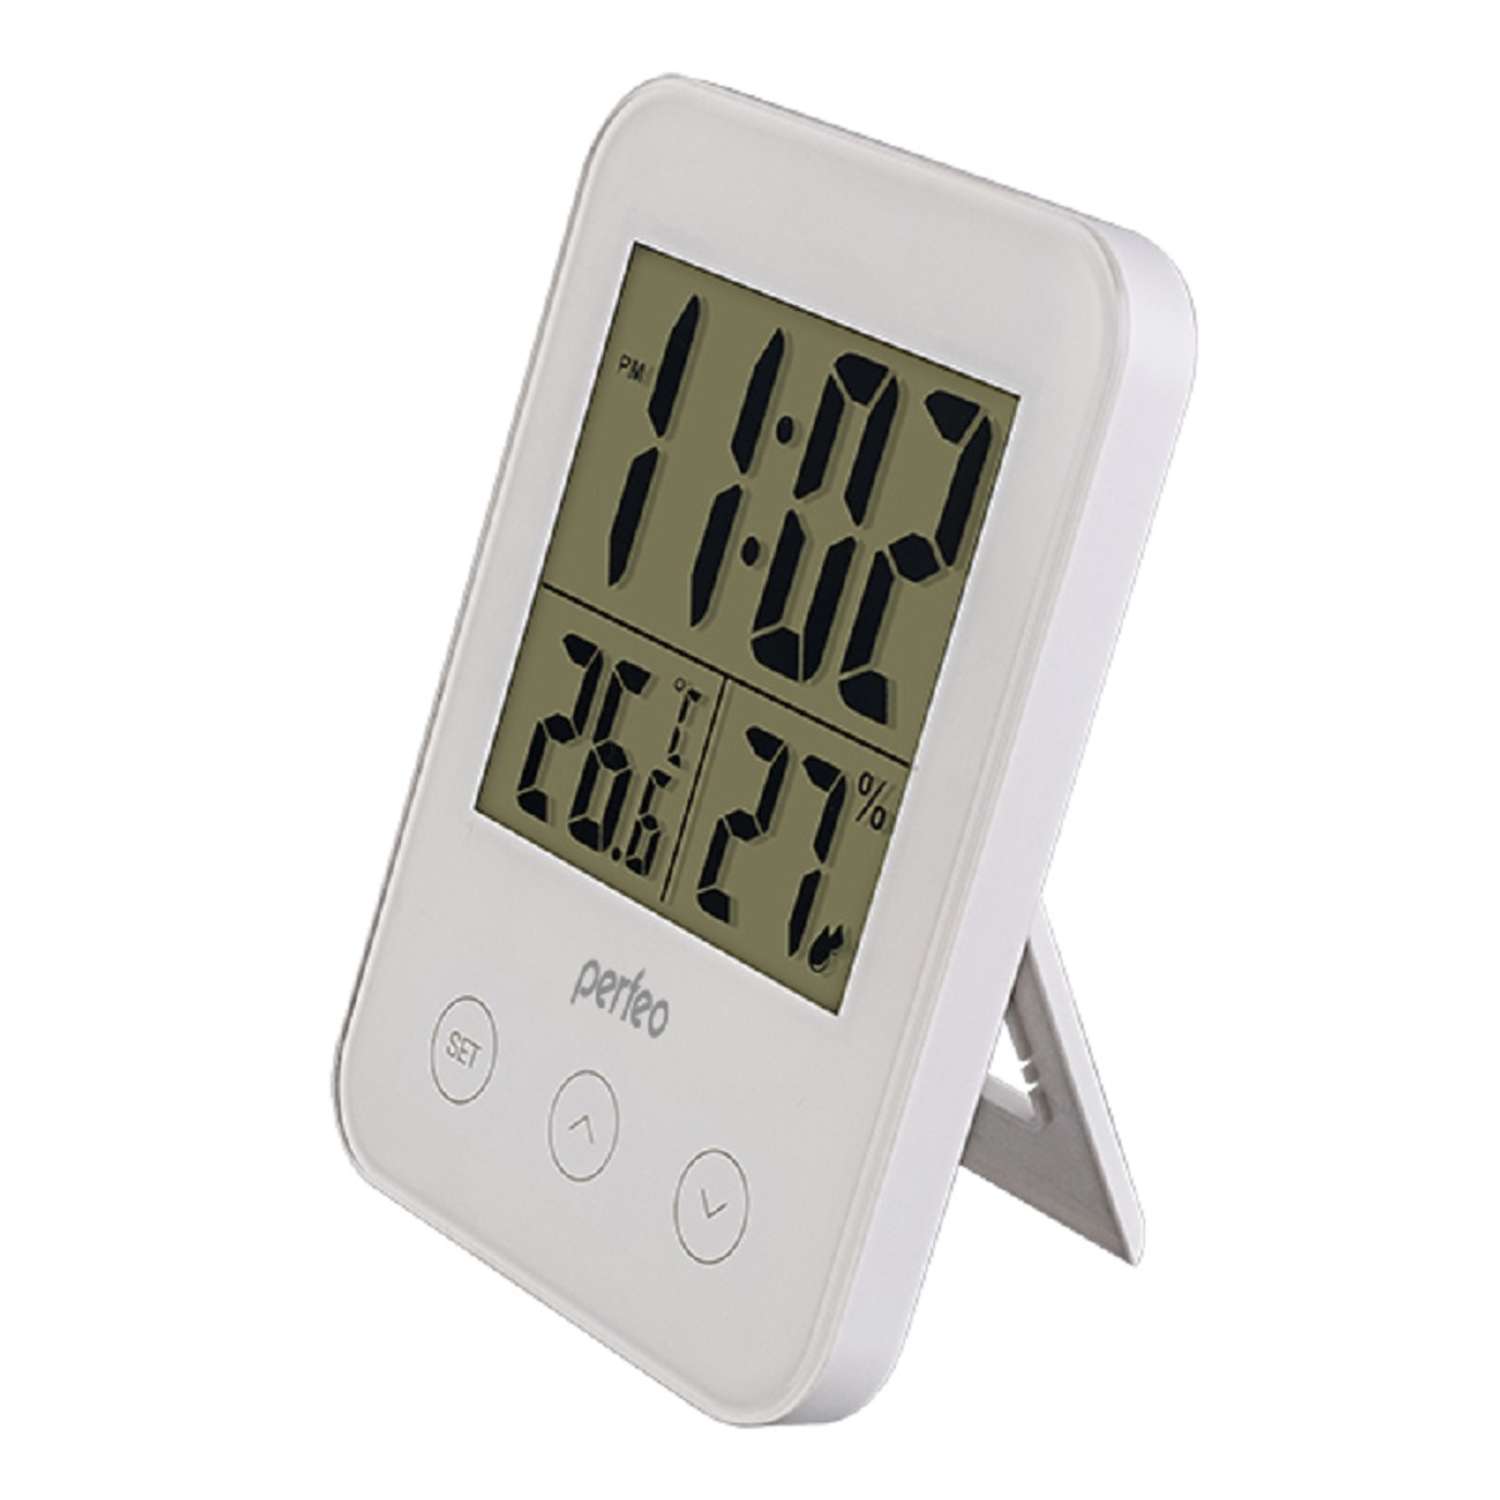 Часы-метеостанция Perfeo Touch белый PF-S681 время температура влажность - фото 1